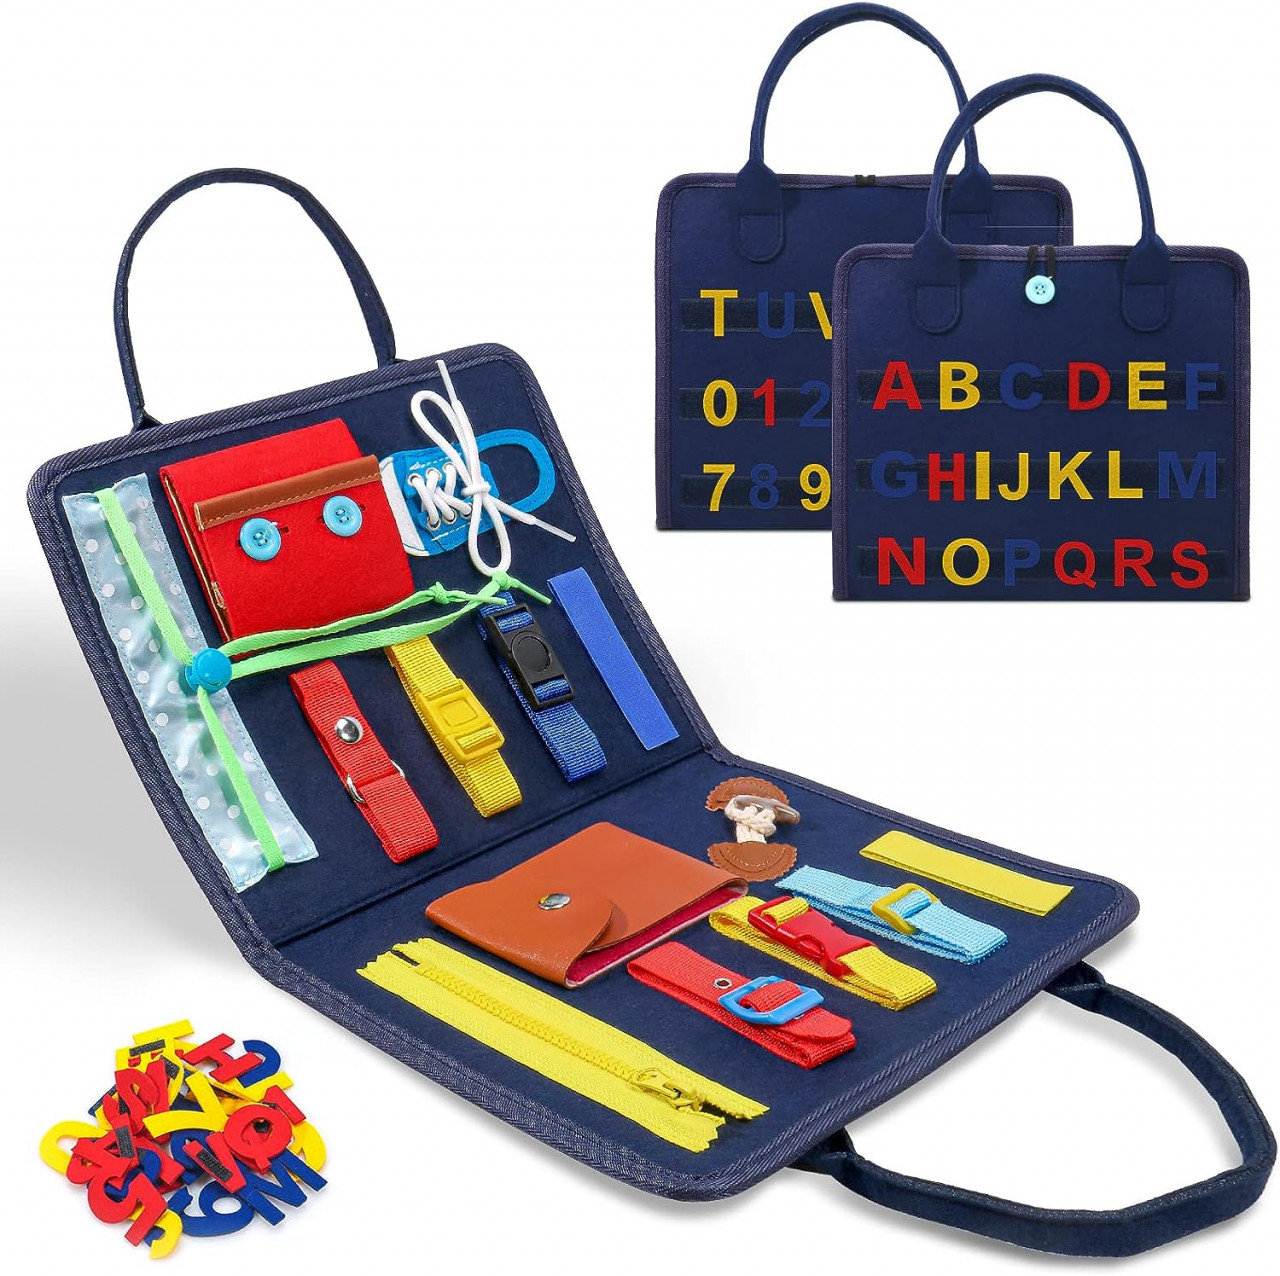 Tabla de joaca pentru copii 3-6 ani DAWINSIE, textil/ABS, multicolor Pret Redus chilipirul-zilei pret redus imagine 2022